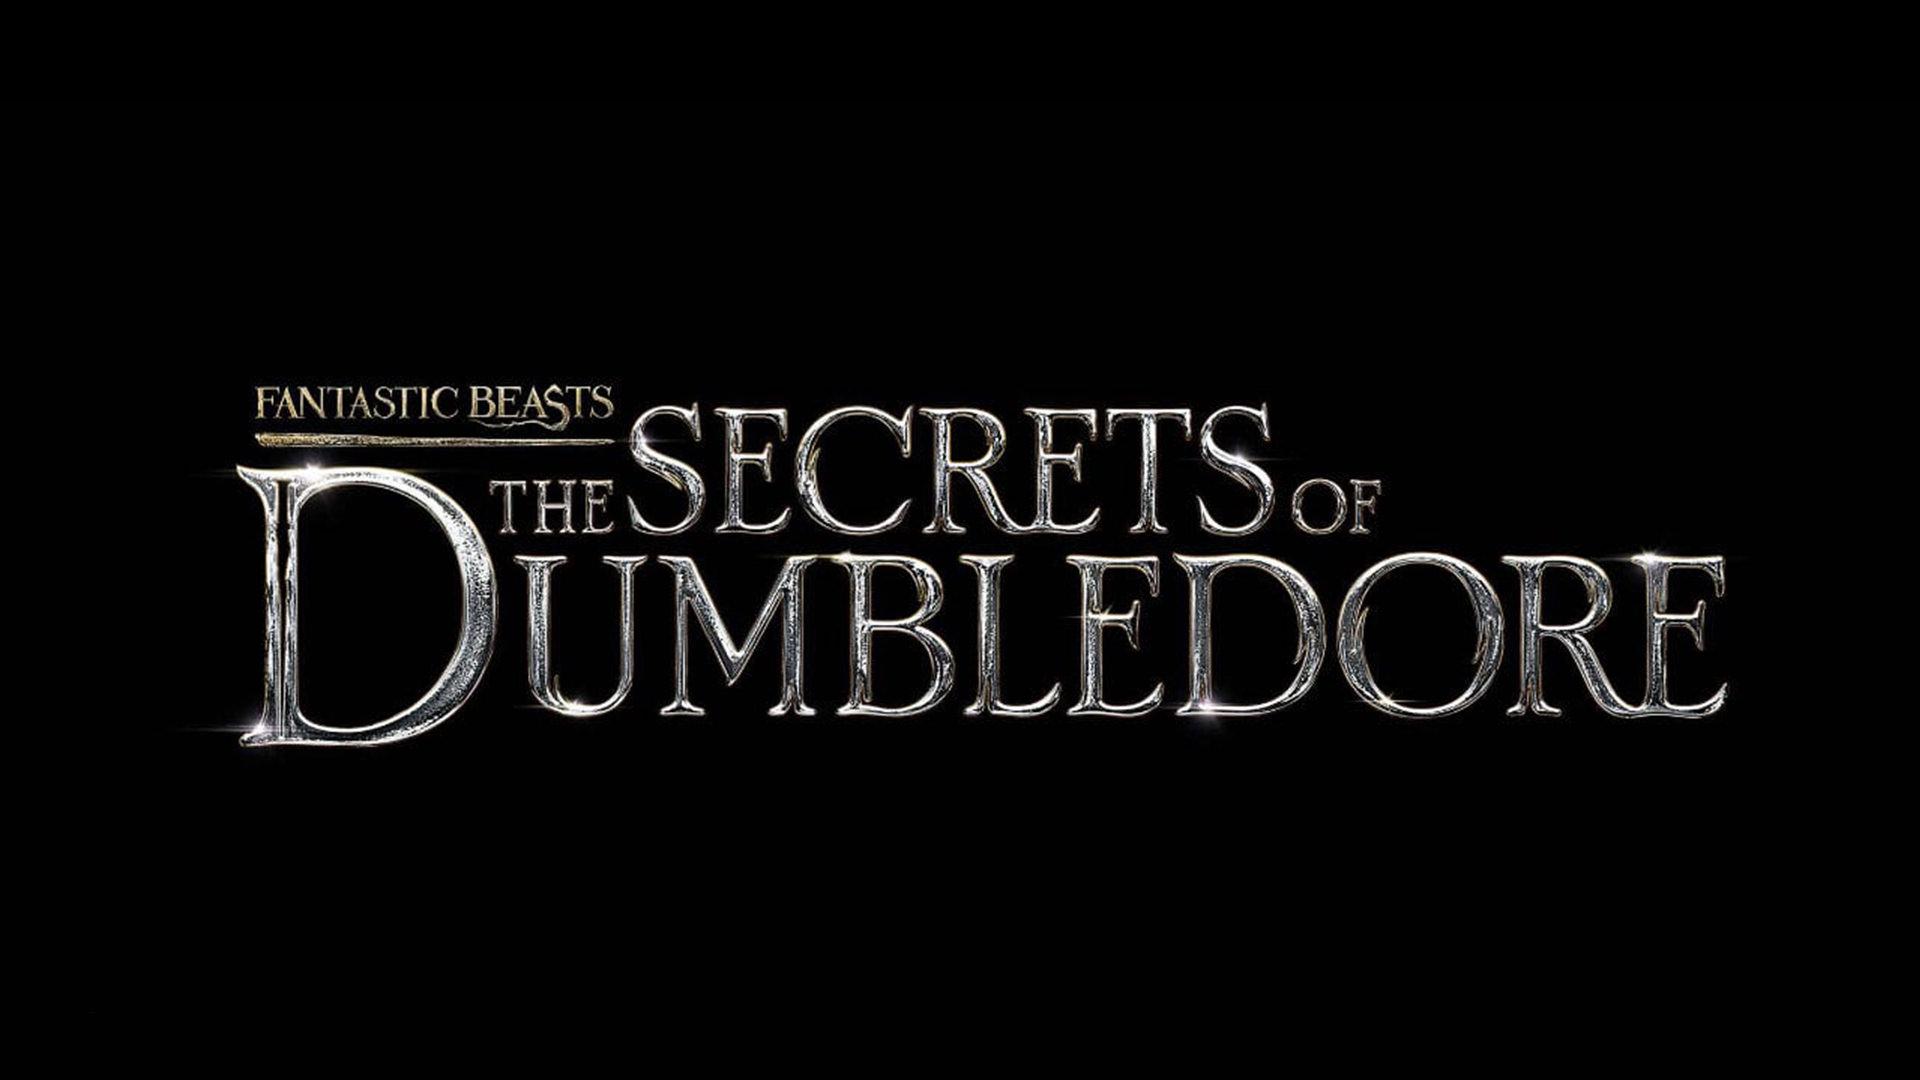 لوگو رسمی فیلم Fantastic Beasts: The Secrets of Dumbledore